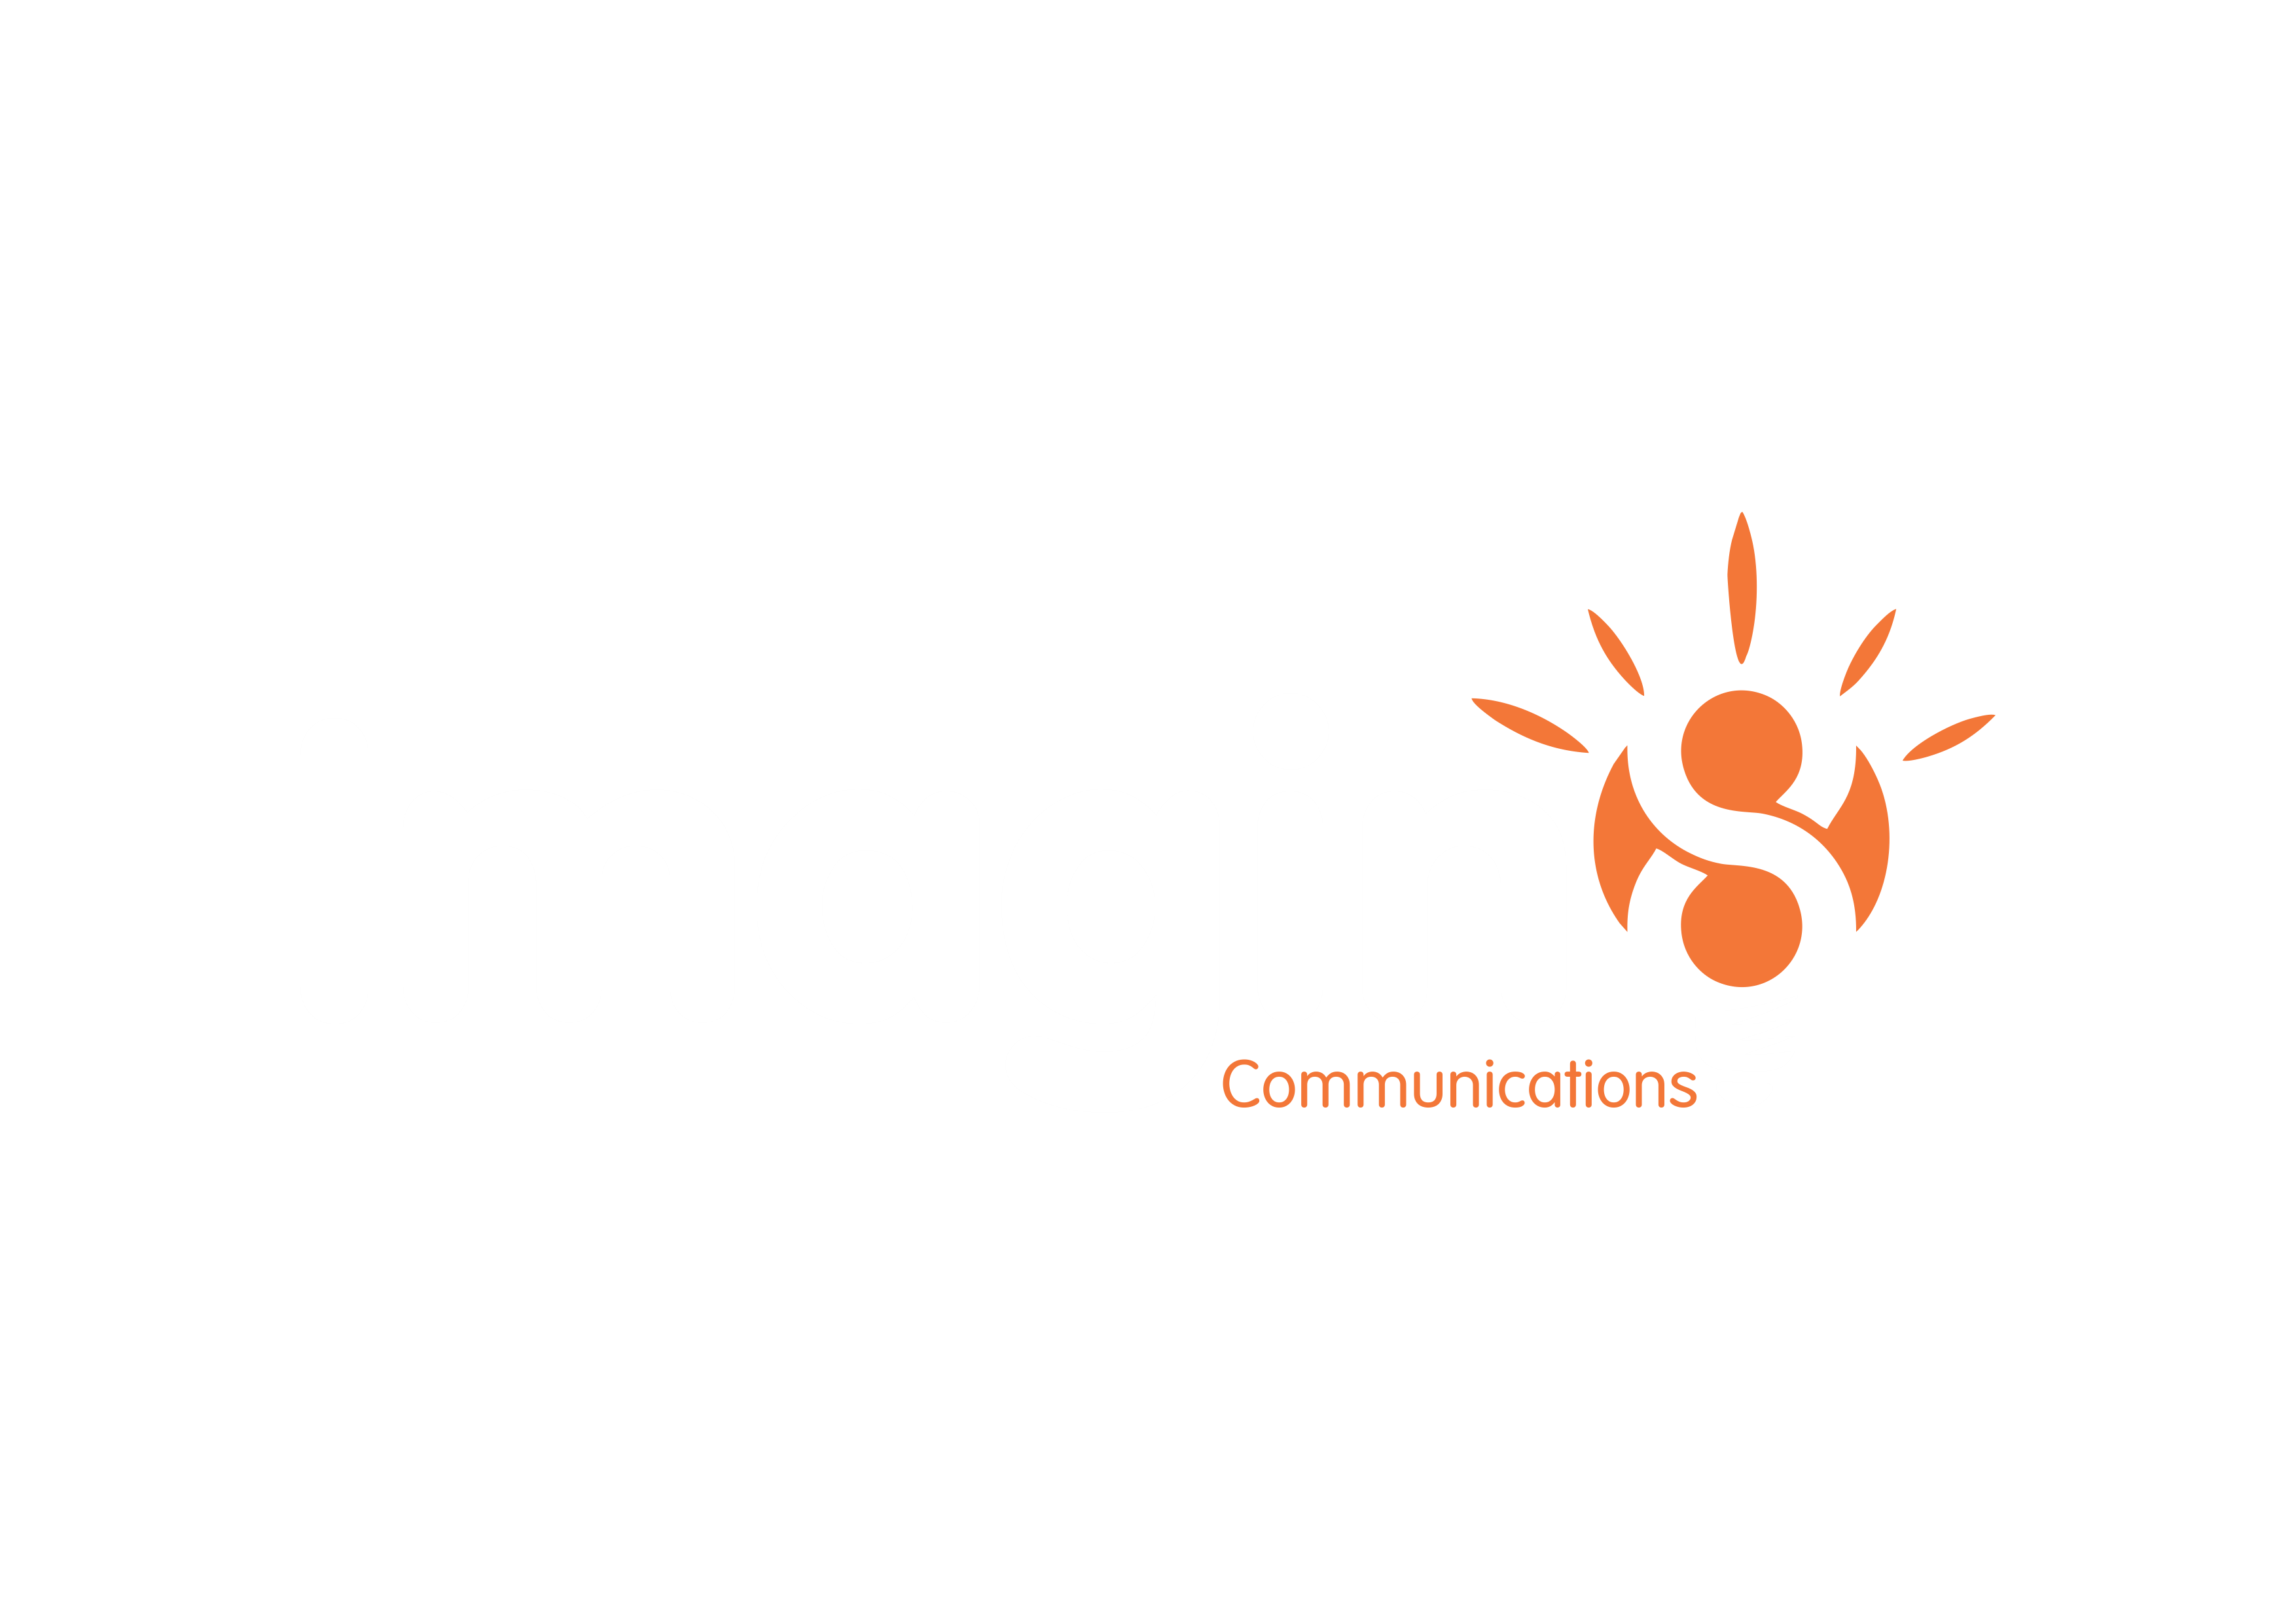 Imagin8 Communications